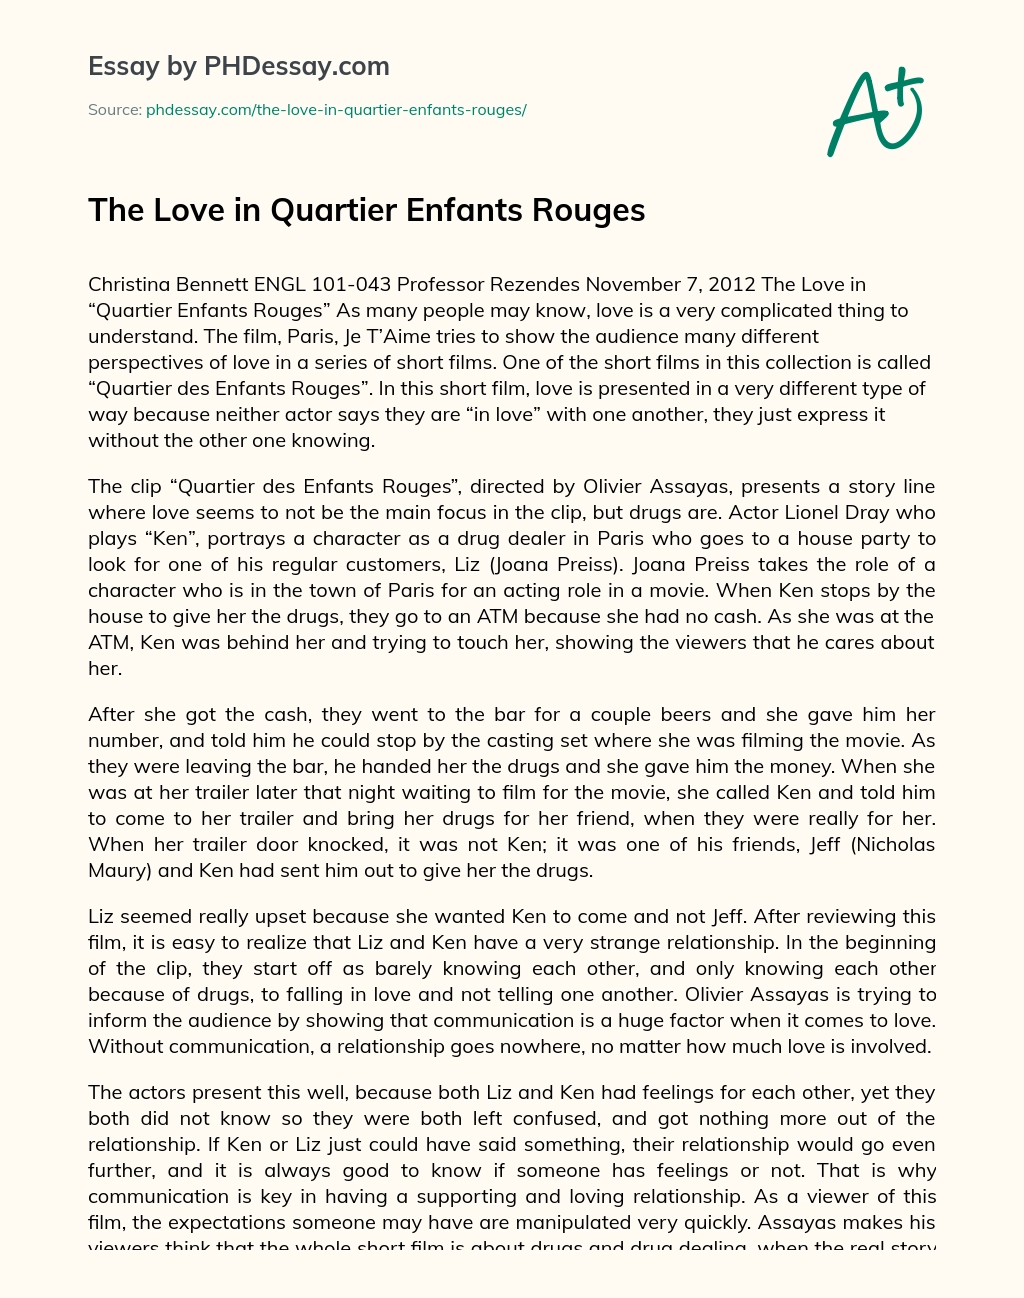 The Love in Quartier Enfants Rouges essay